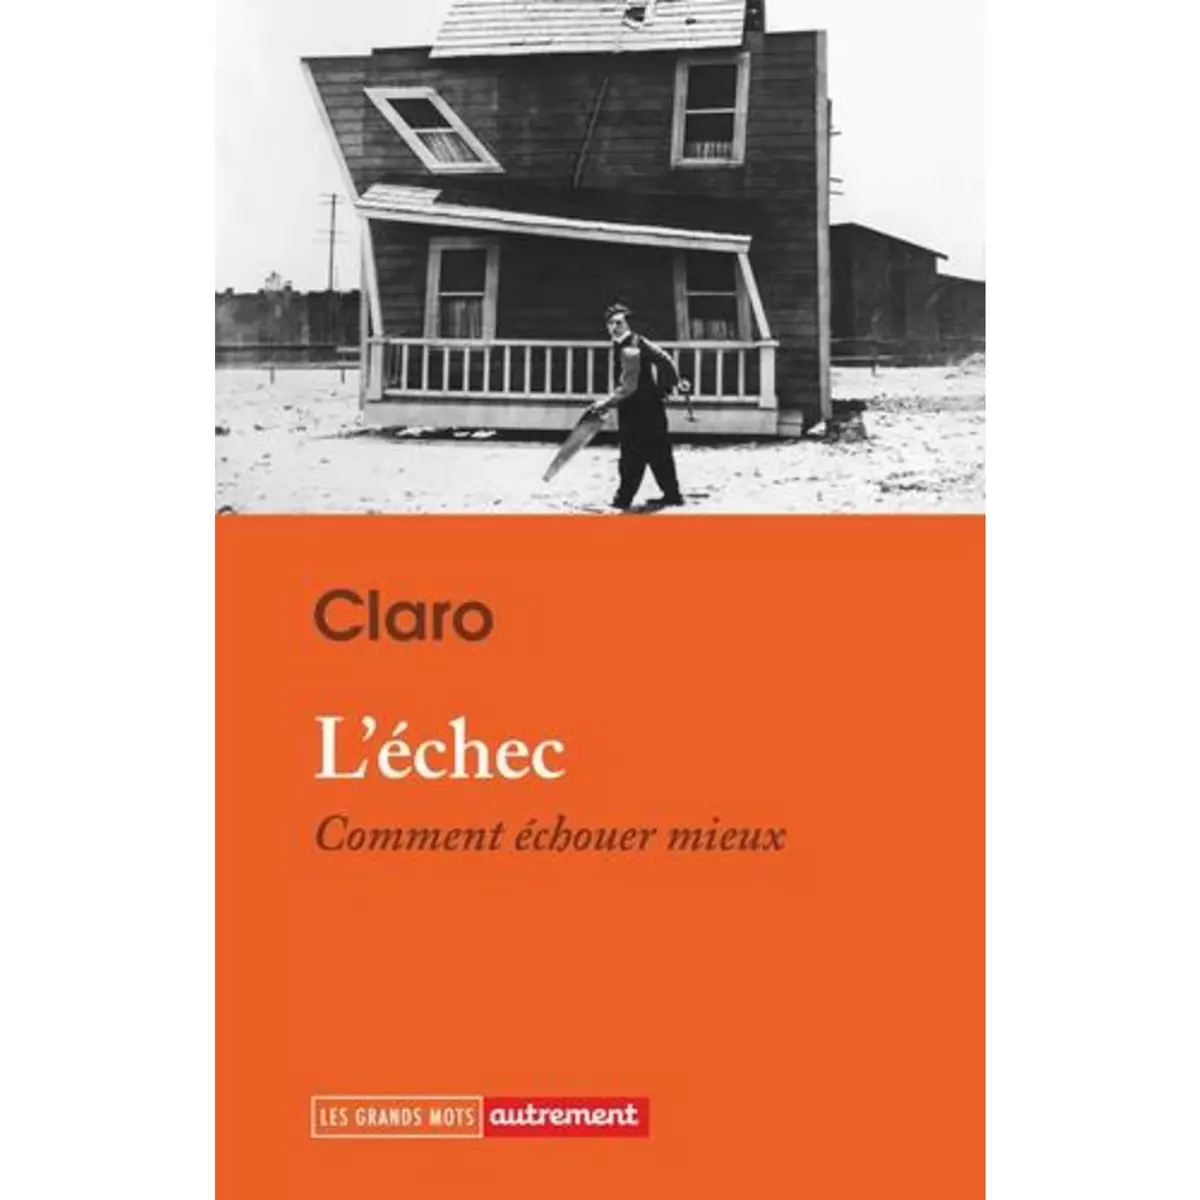  L'ECHEC. COMMENT ECHOUER MIEUX, Claro